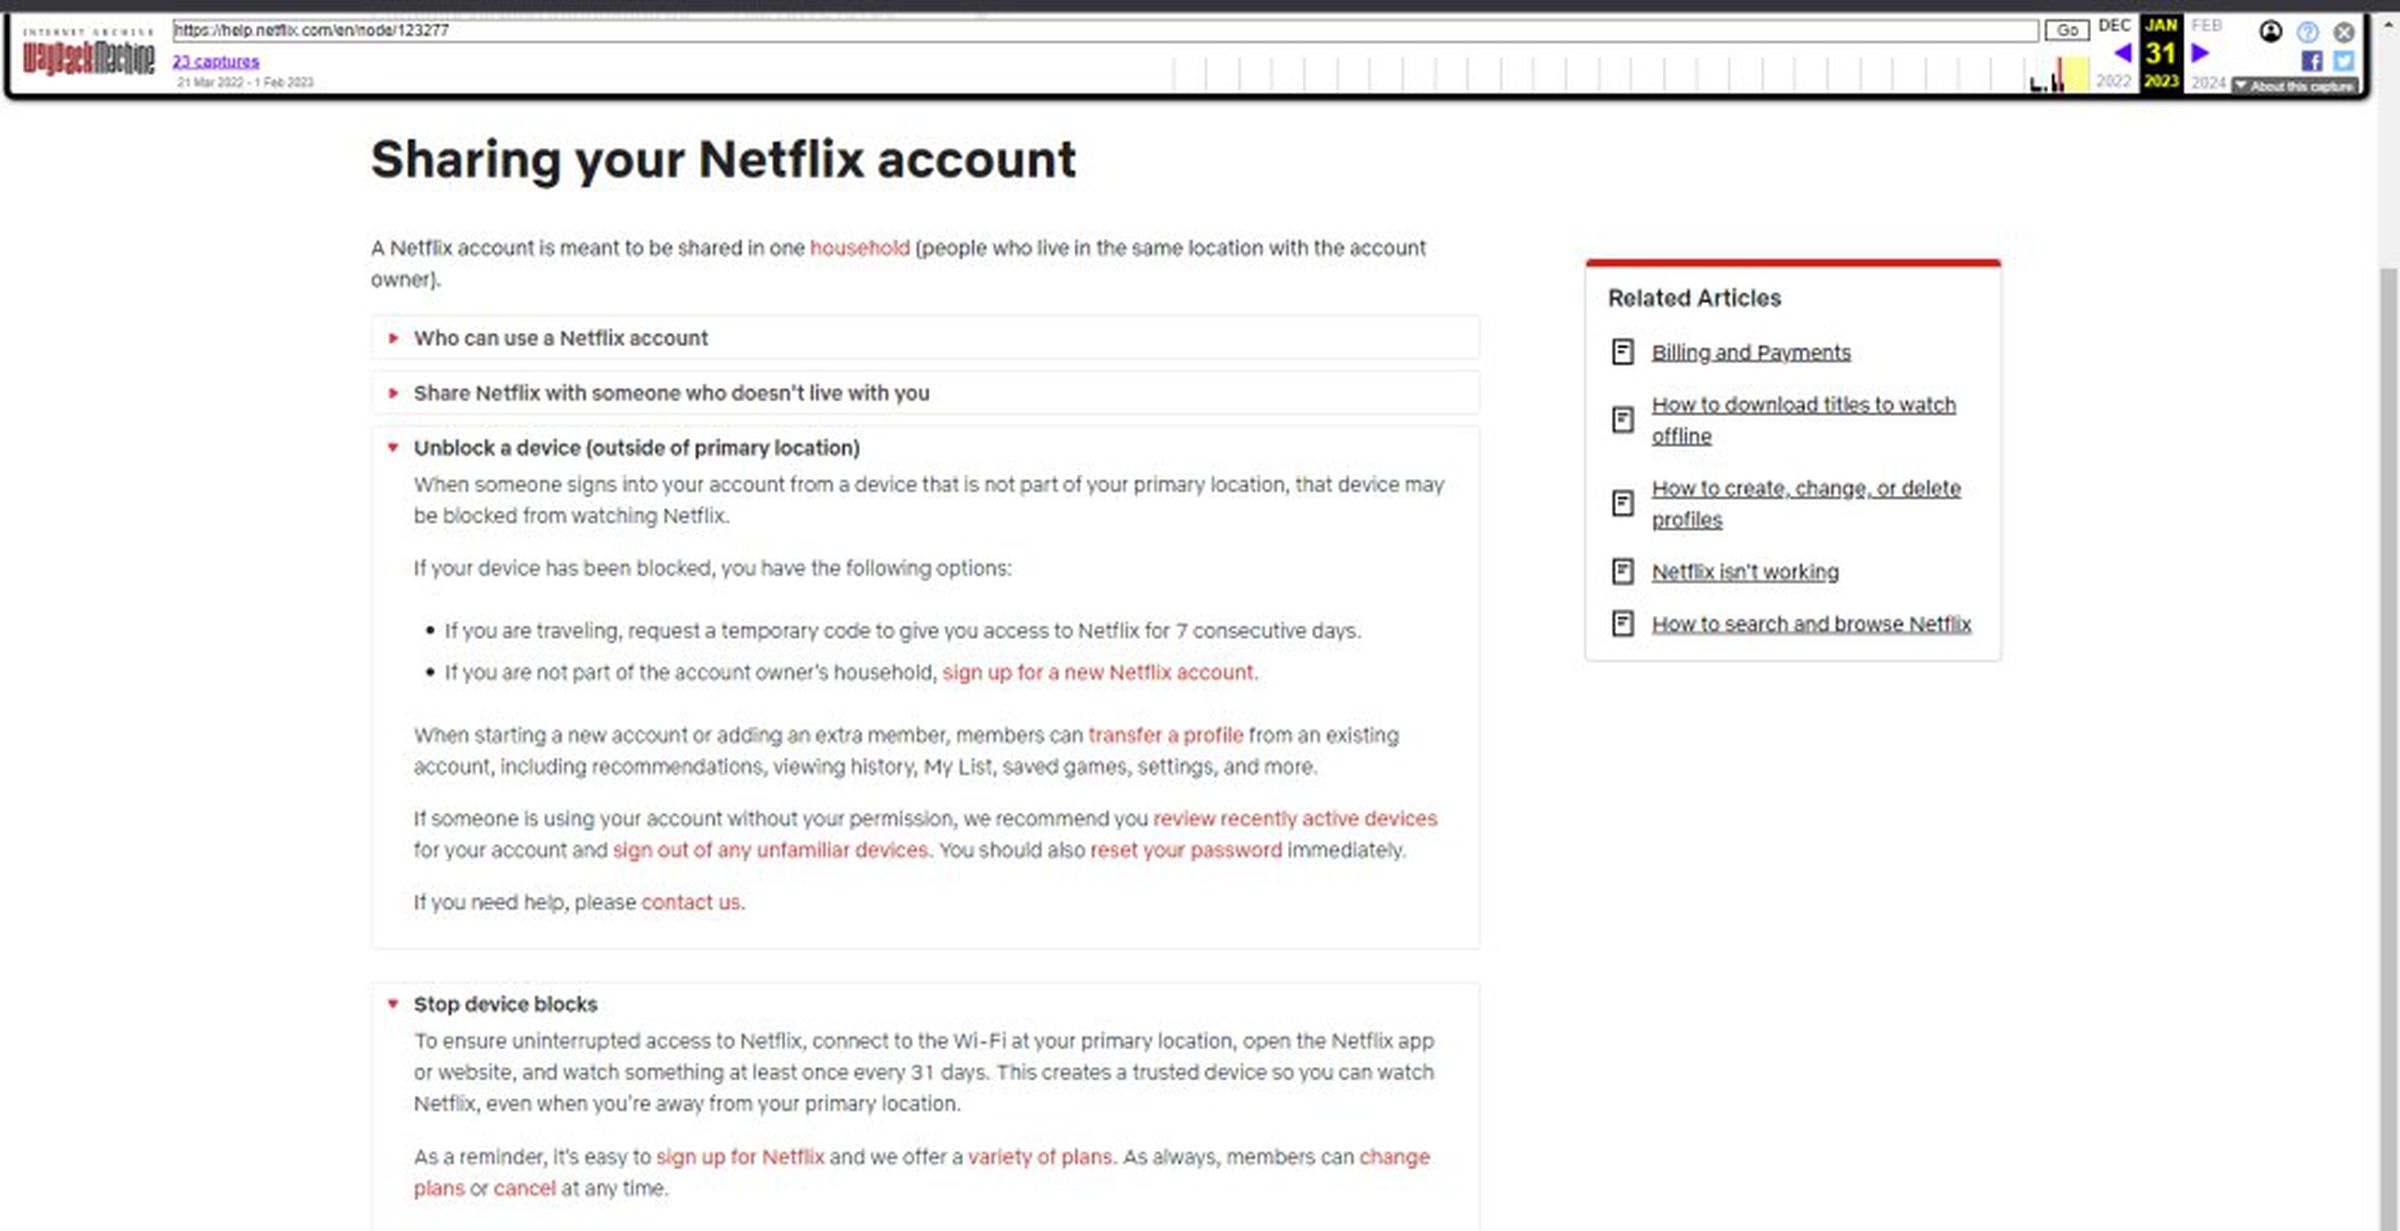 アーカイブされたサポート ページには、Netflix がデバイスをブロックできると記載されています 